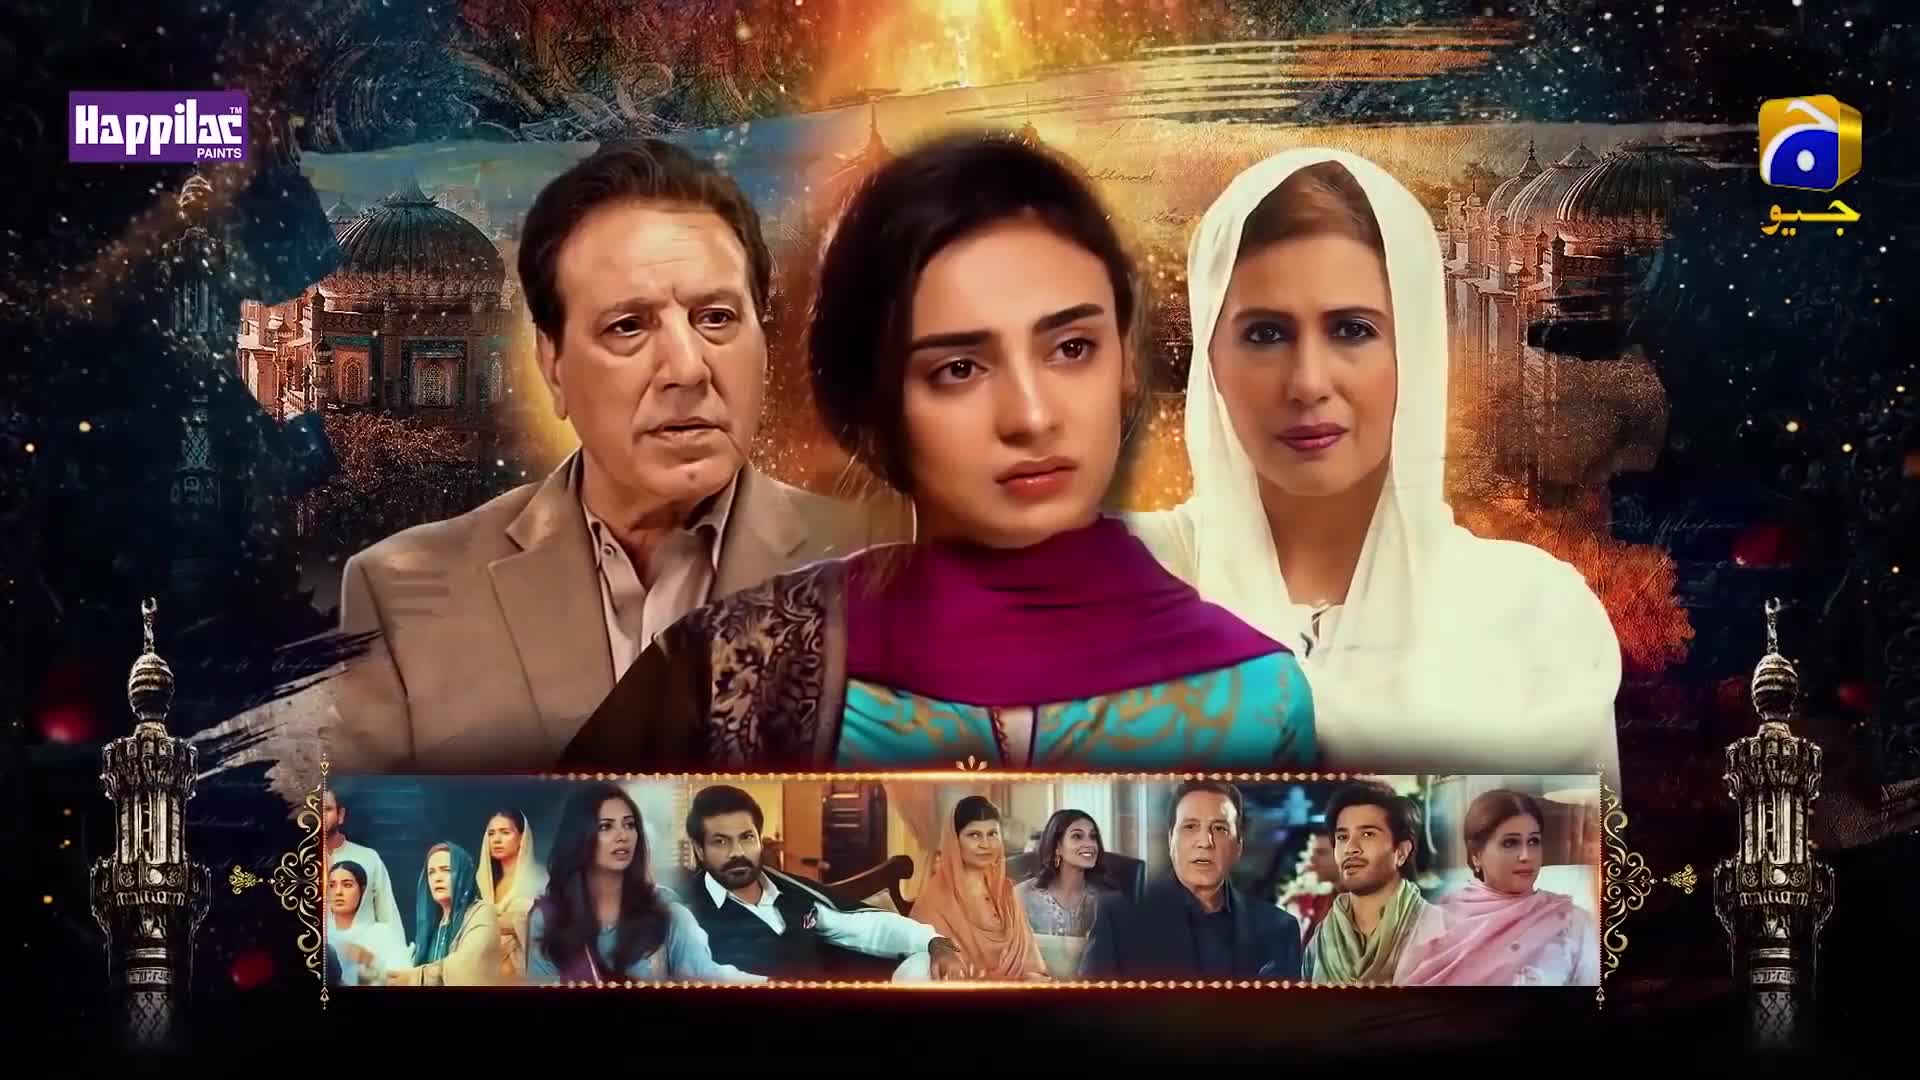 Khuda Aur Mohabbat Season 3